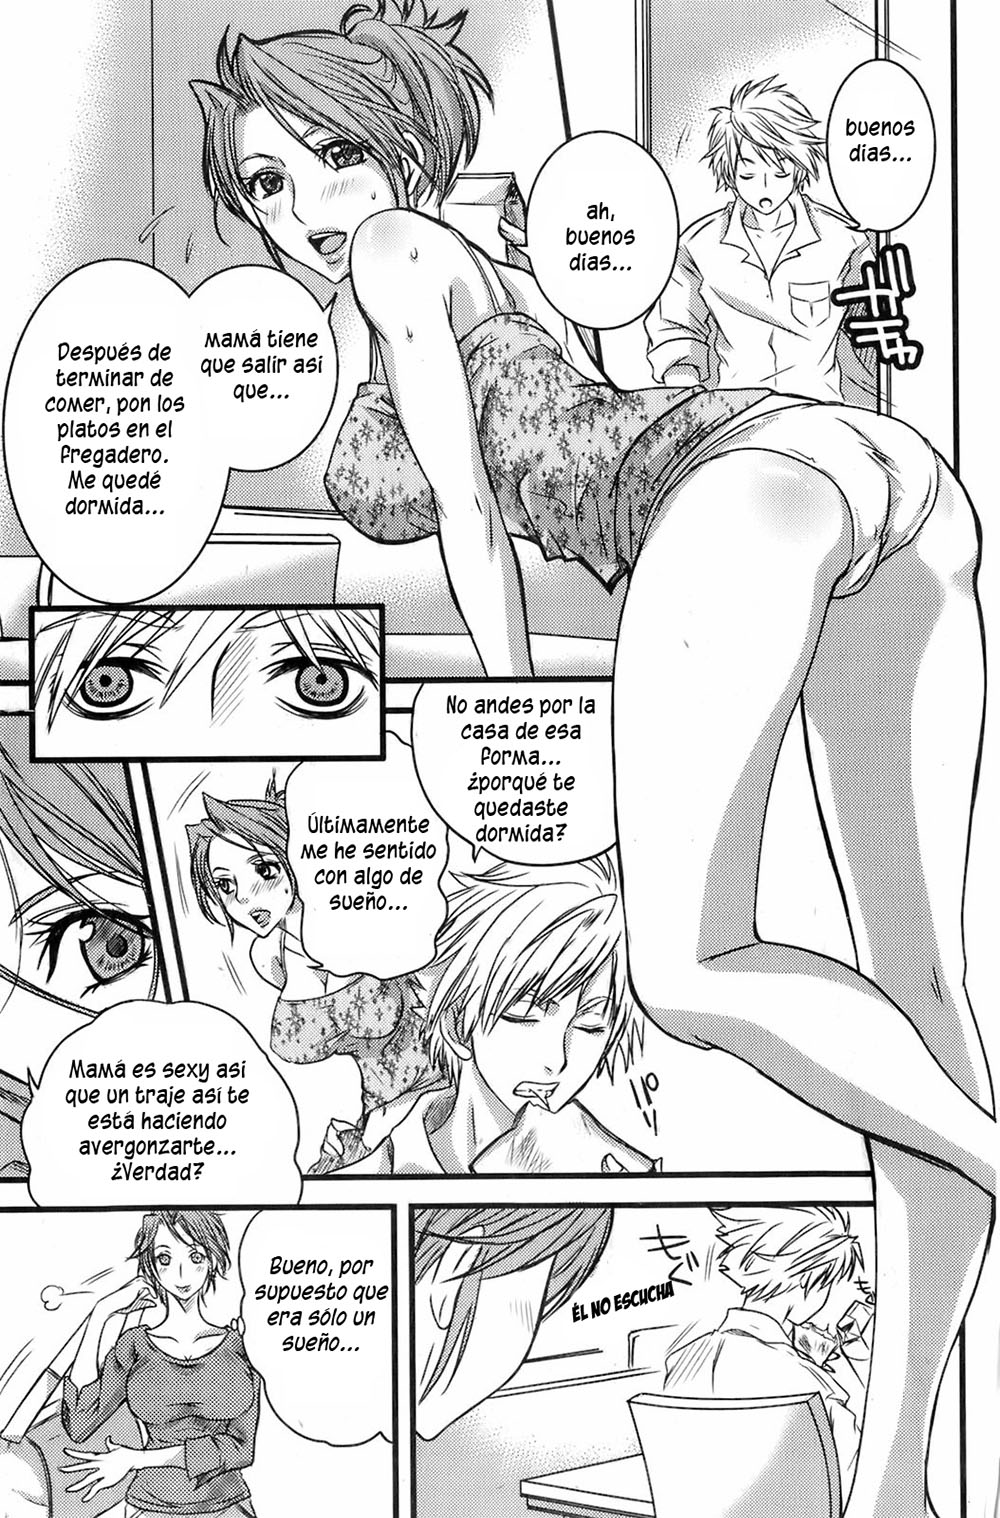 Celoso de Mamá - 3 - Comics Porno - Hentai Manga - Cartoon XXX